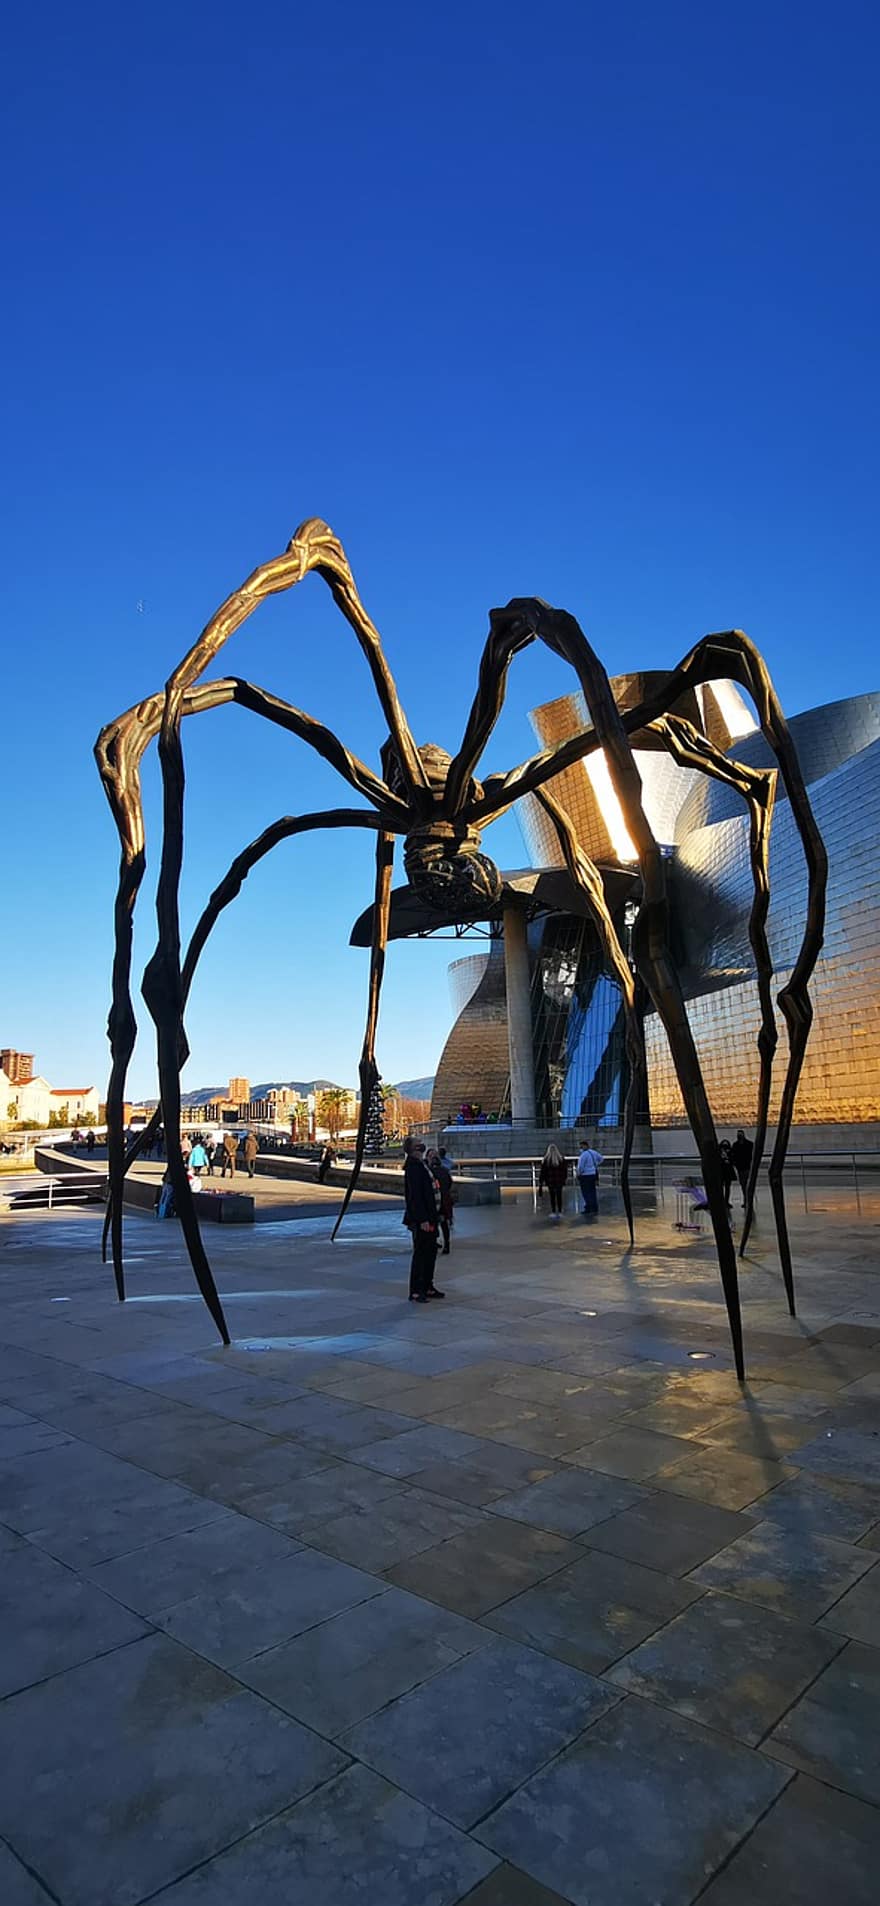 Spider, Museum, Art, Spain, Bilbao, men, sunset, dusk, famous place, blue, architecture